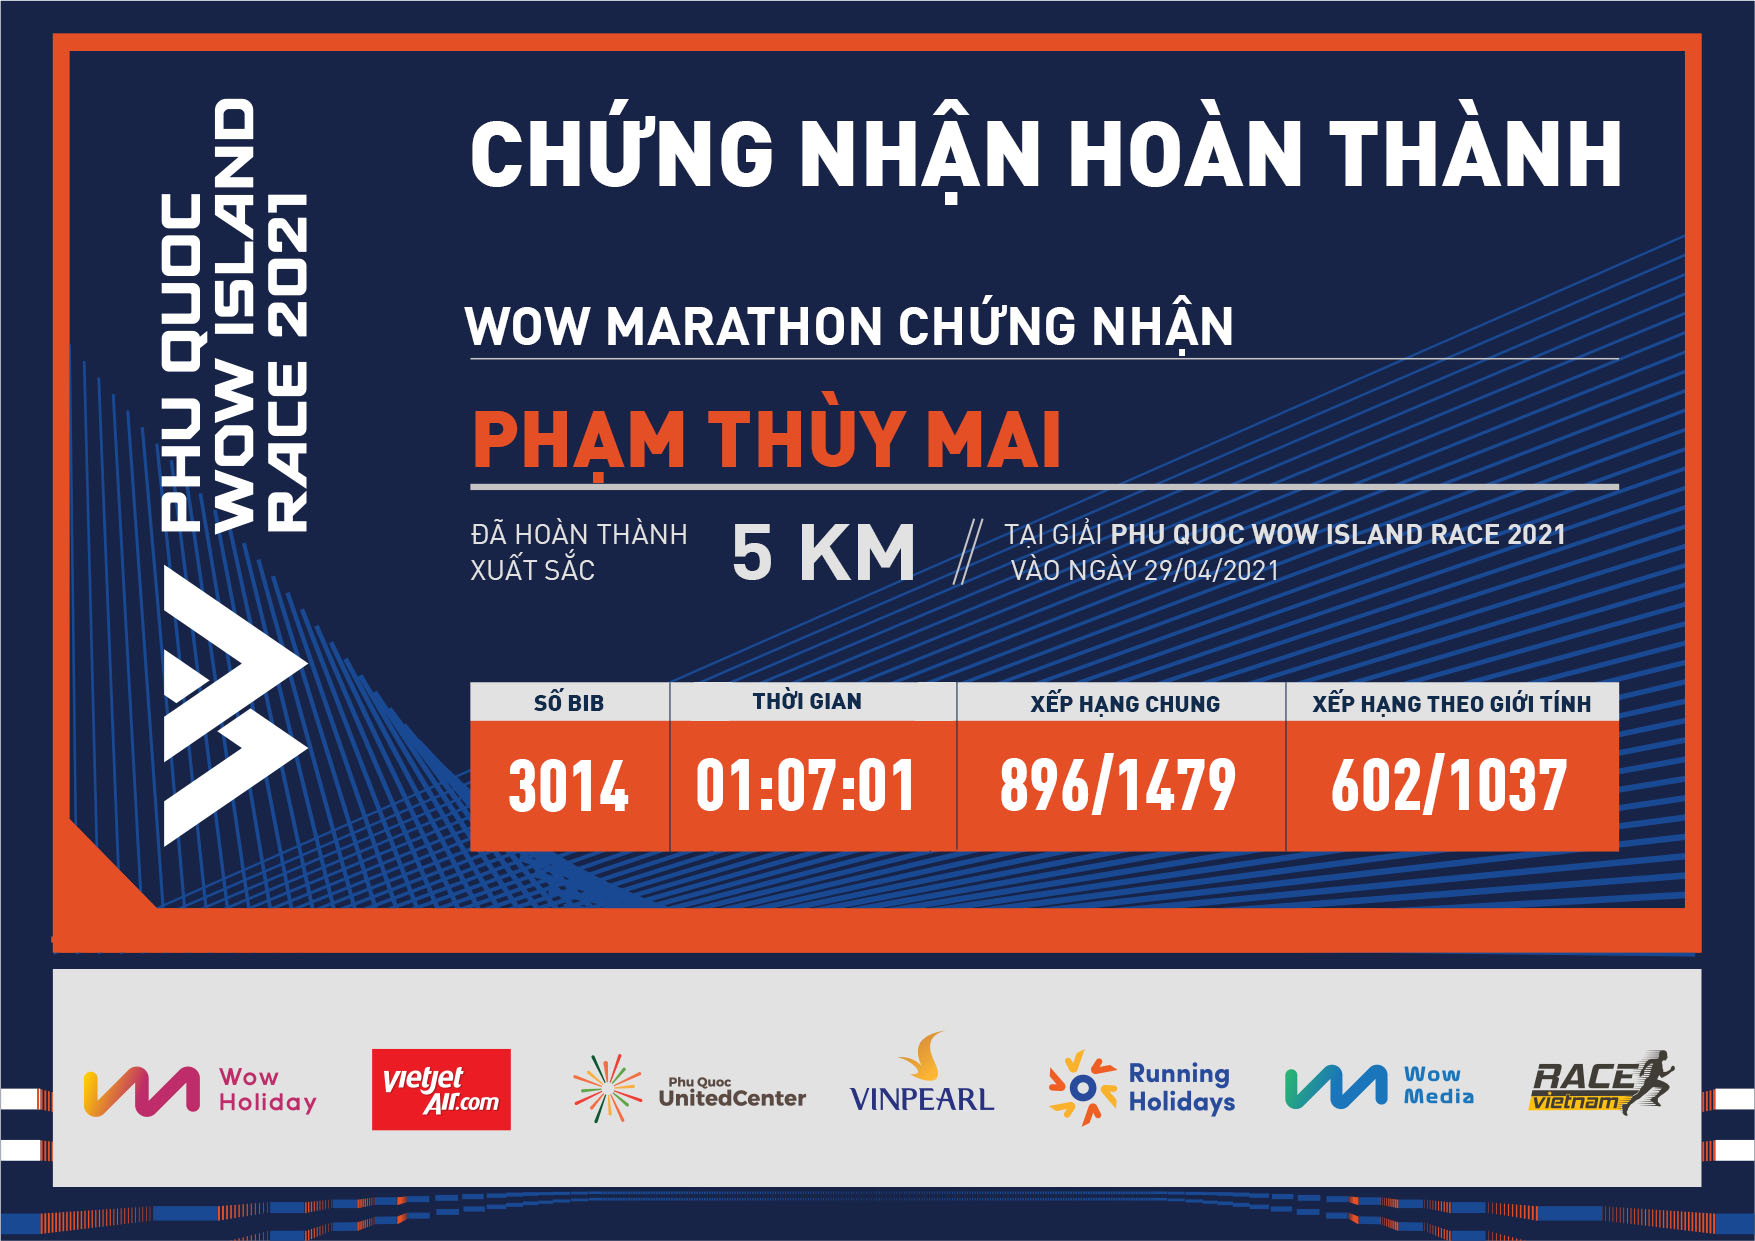 3014 - Phạm Thùy Mai